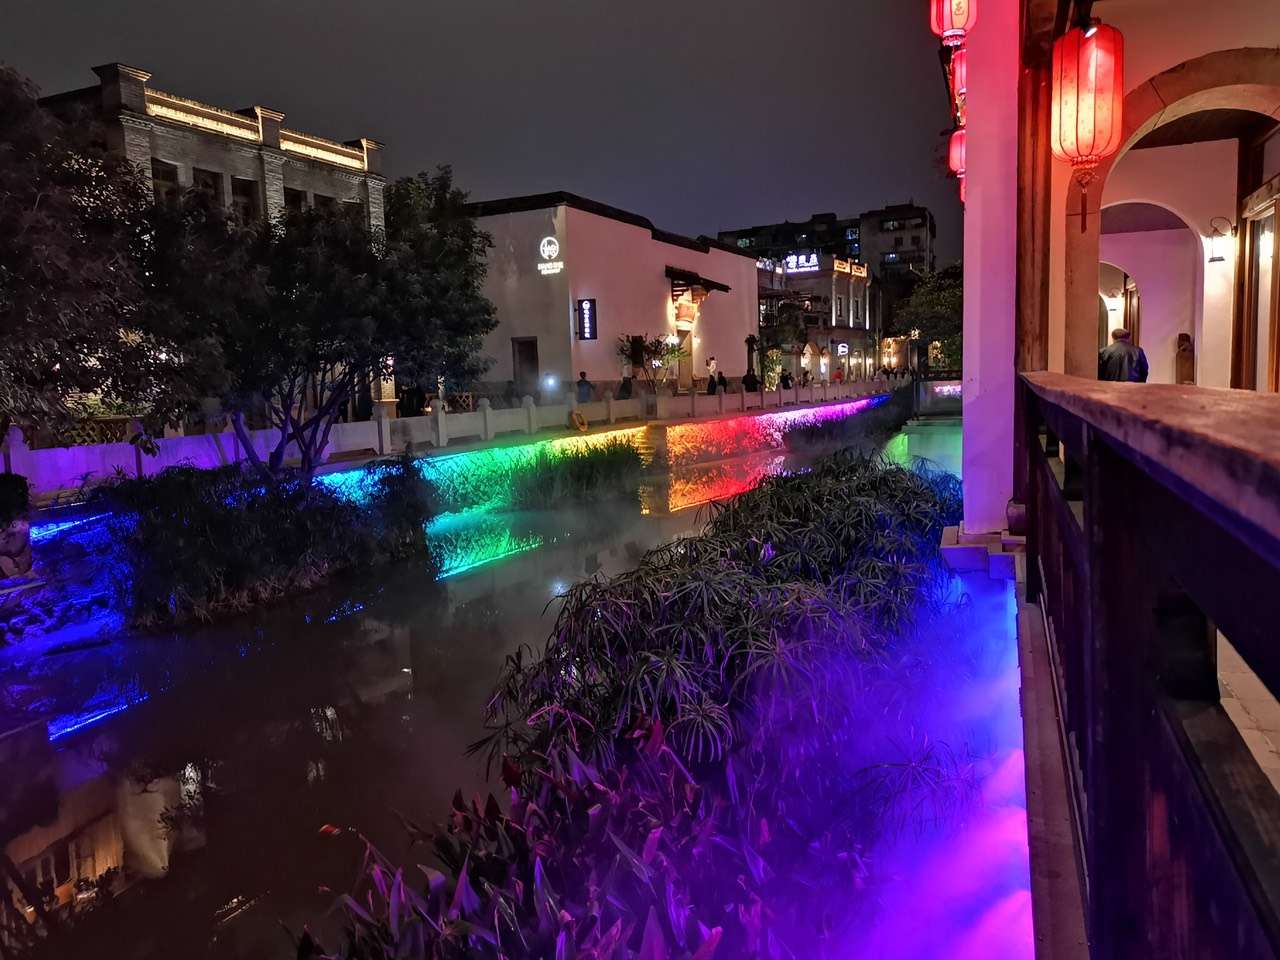 上下杭,福州的必游景点之一,除了三坊七巷外.晚上过来,夜景也很漂亮